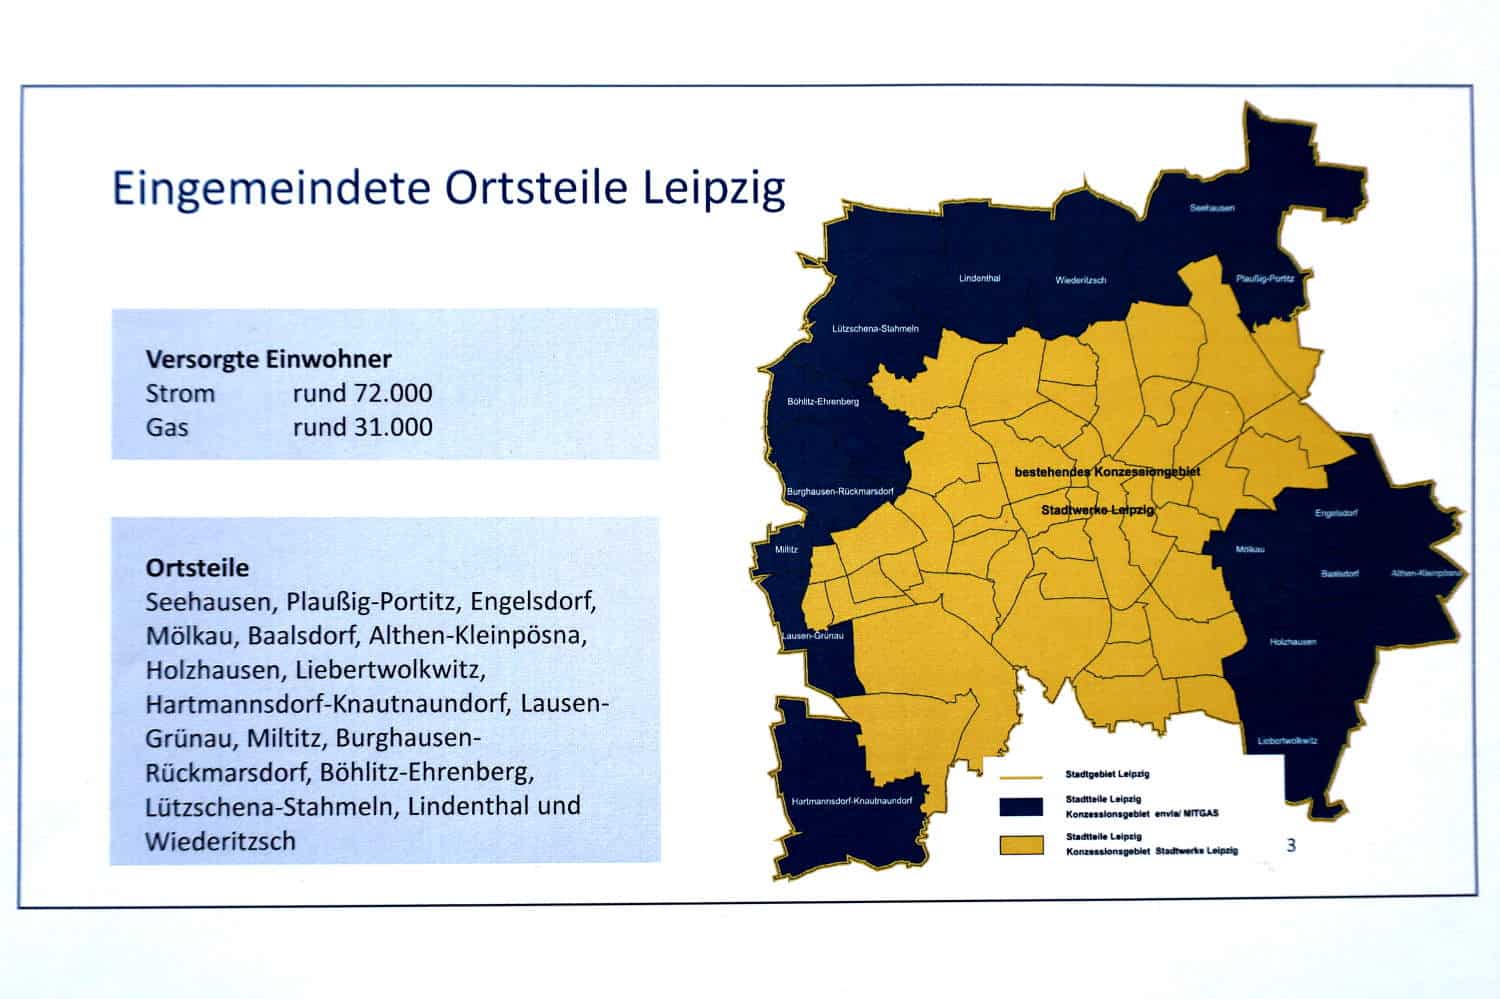 Die 1999 / 2000 eingemeindeten Ortsteile von Leipzig, in denen jetzt der Netzbetreiber wechselt. Karte: L-Gruppe